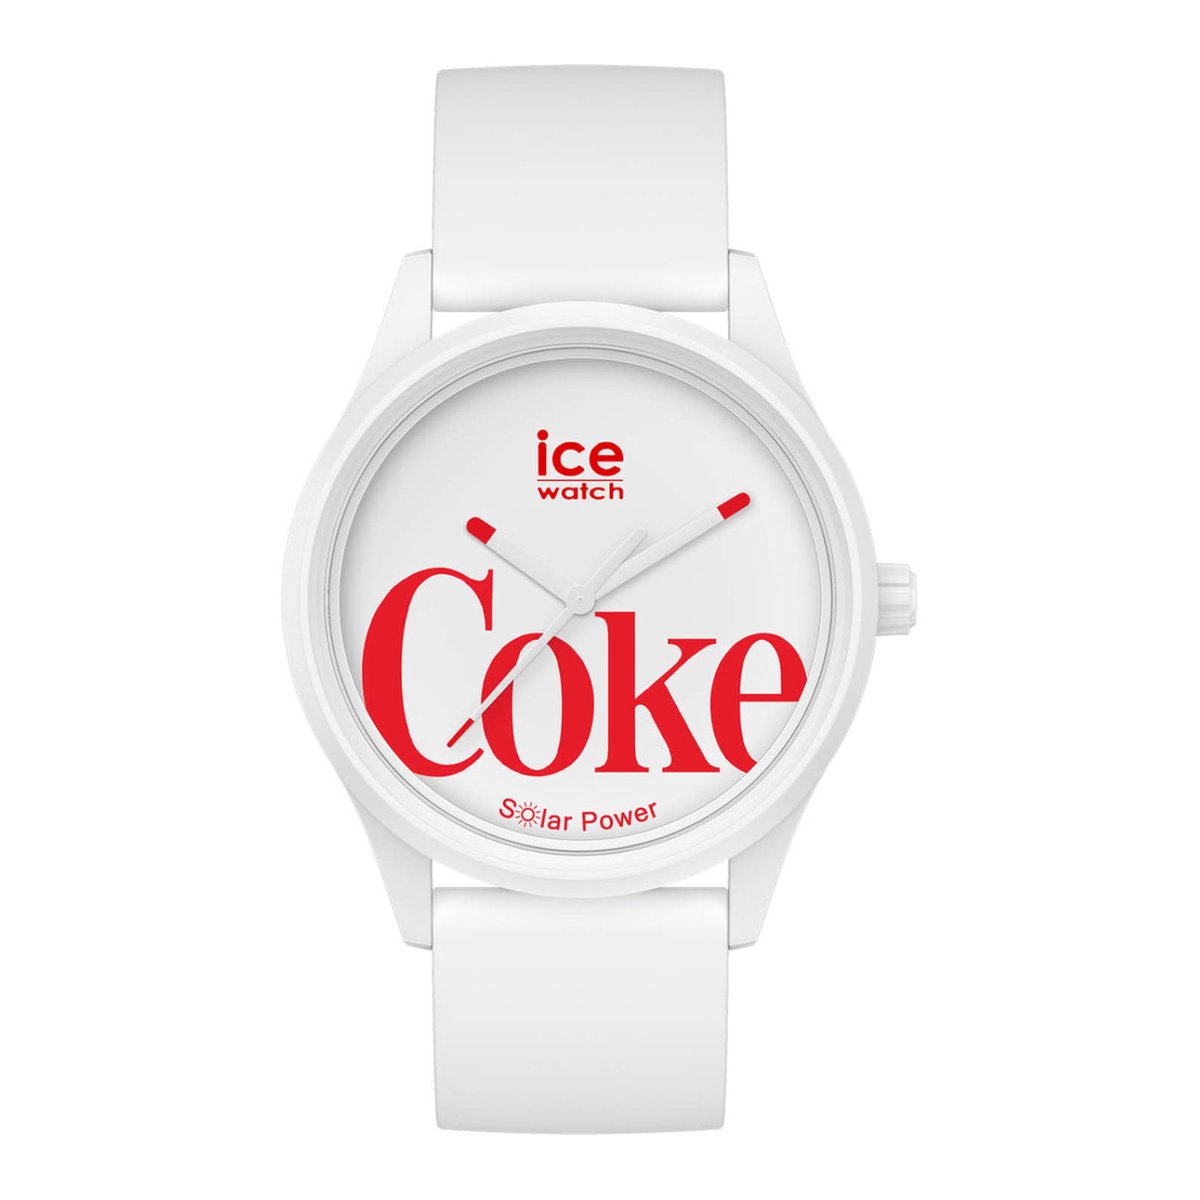 Ice-Watch ICE X Coca Cola IW018513 horloge - Kunststof - Rond - 40mm